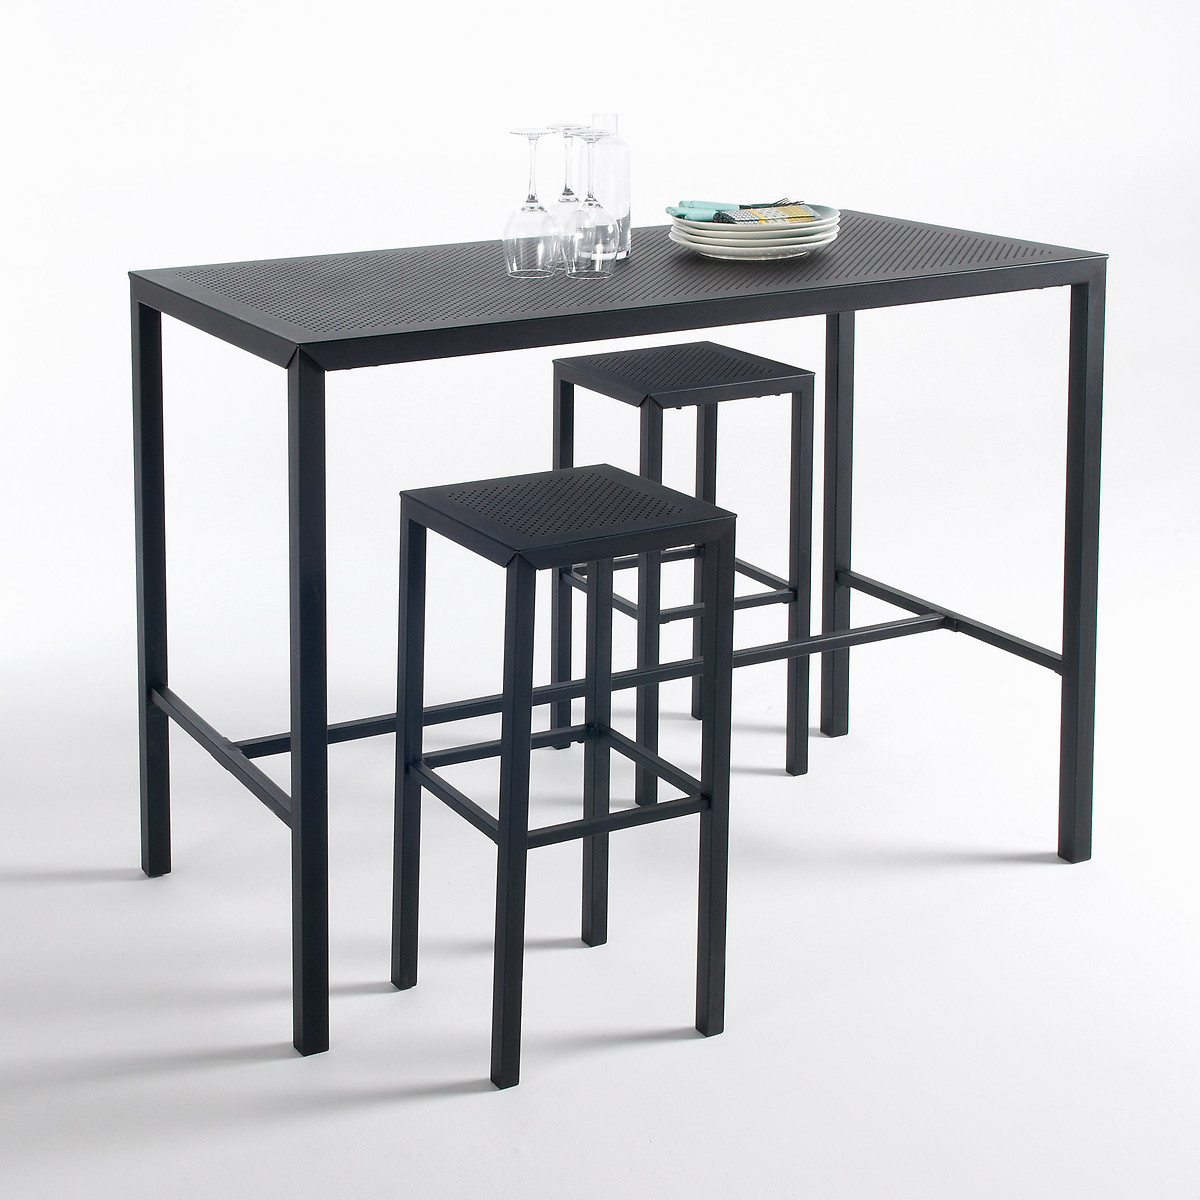 Столик высокий из перфорированного металла Choe единый размер черный стол диванный для сада из металла choe единый размер черный